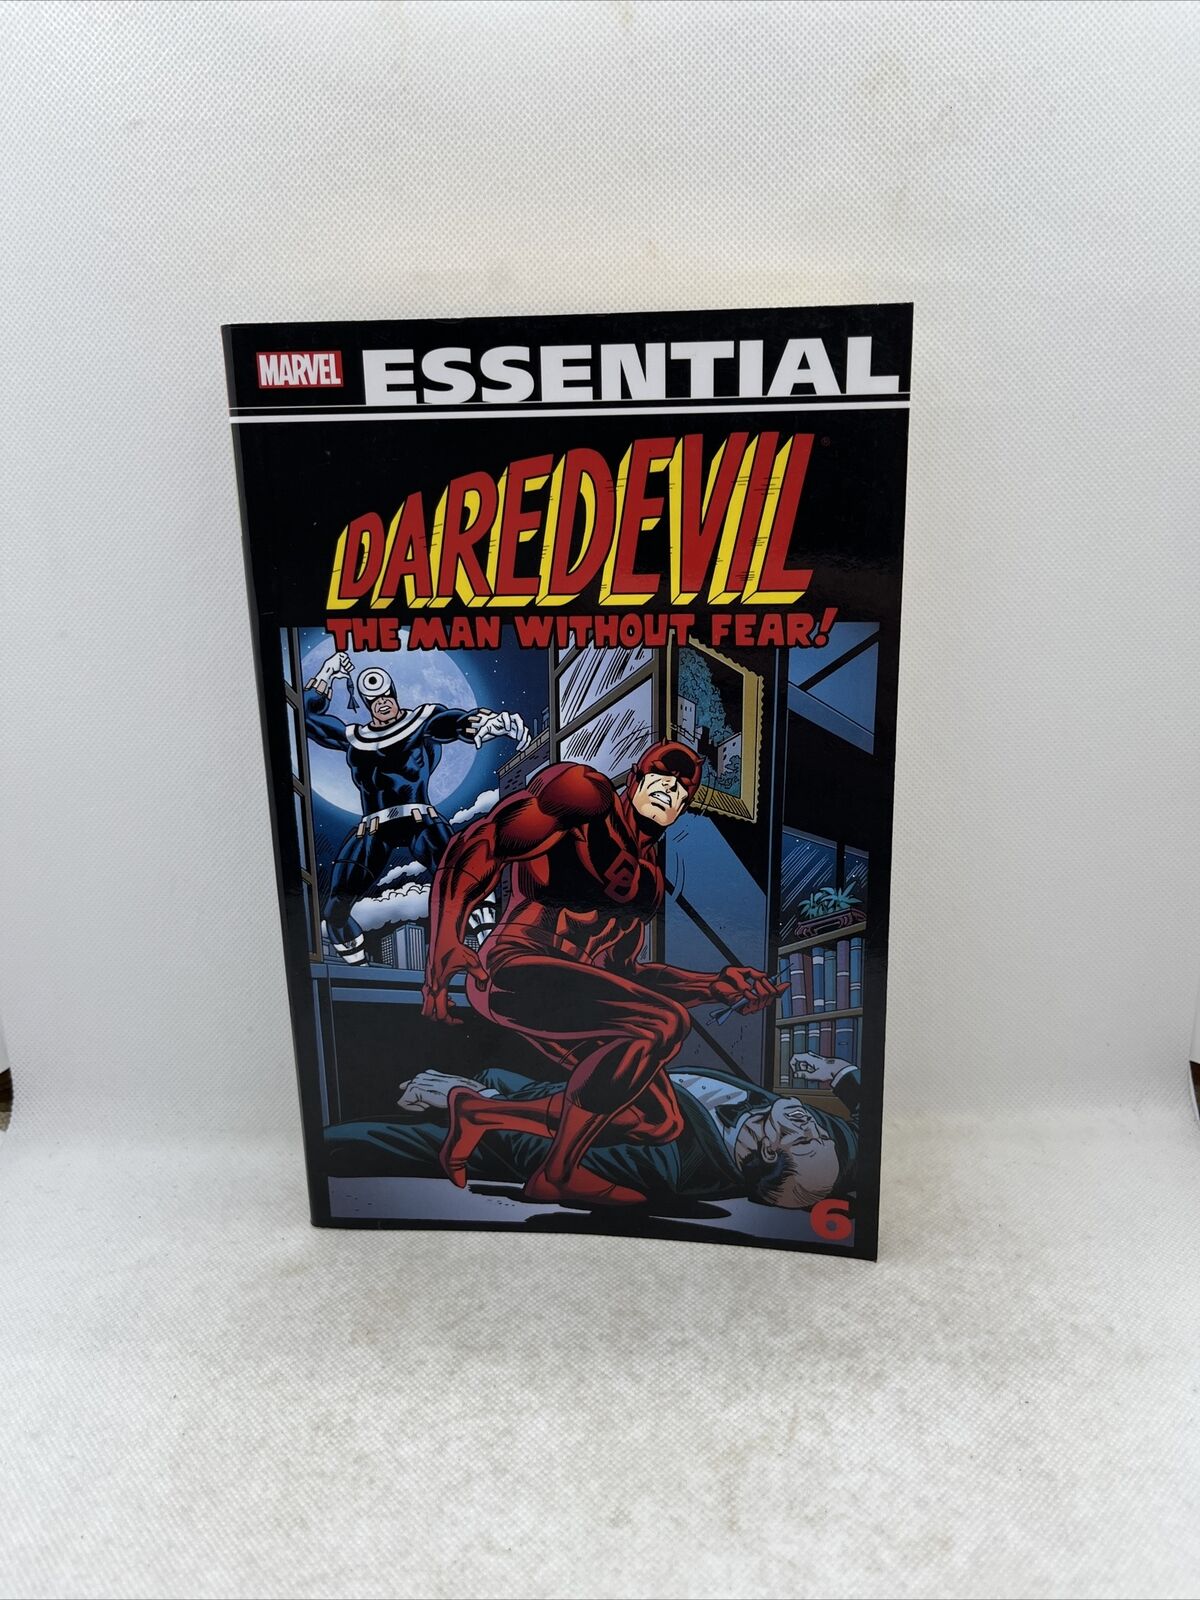 Essential Daredevil Volume 6 (Marvel, November 2013) 